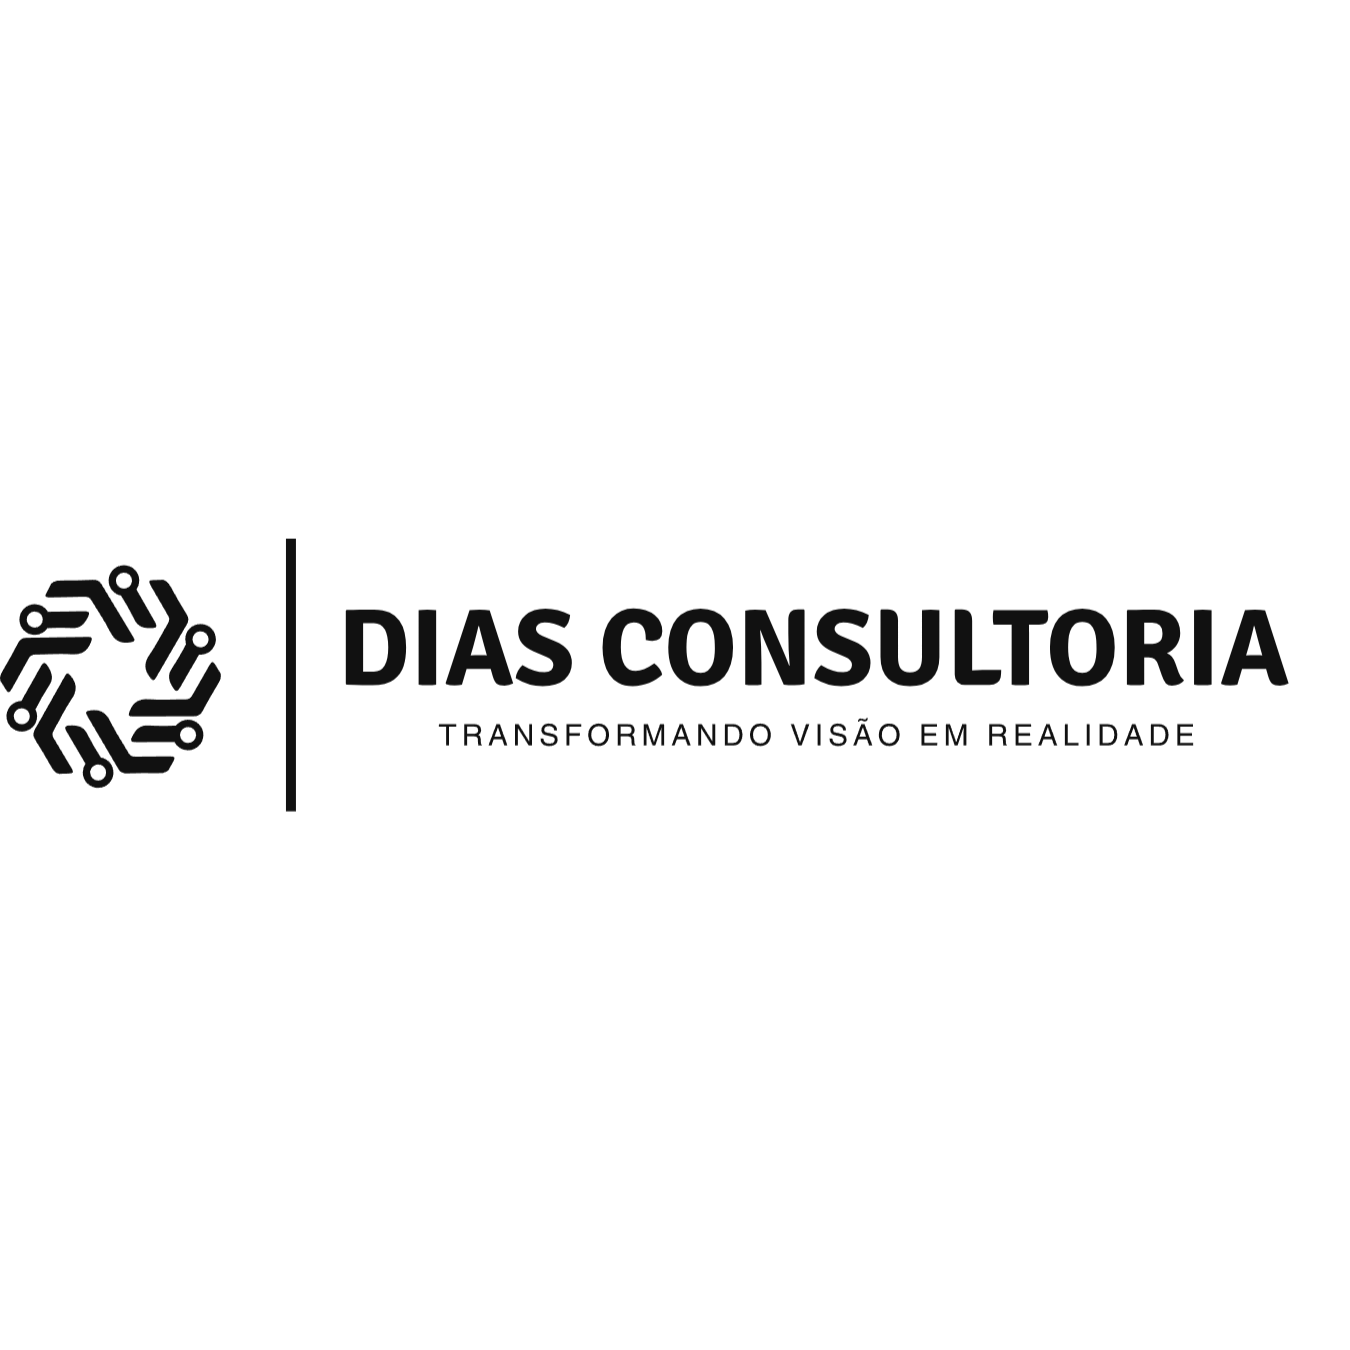 Tiago Dias Consultoria